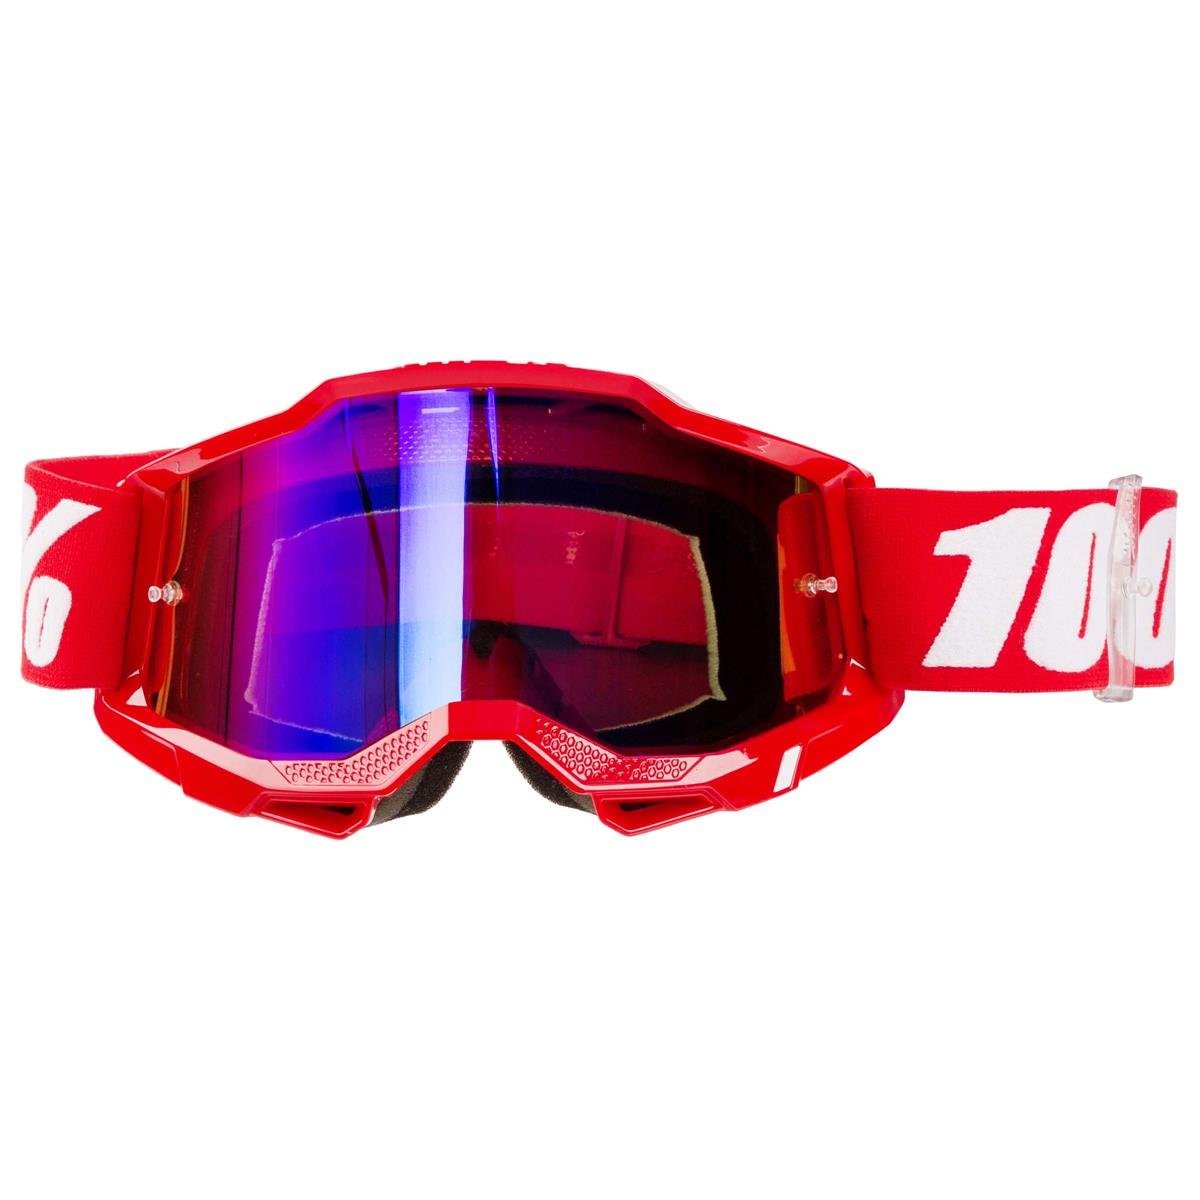 100% Maschera Accuri Gen. 2 Neon Rosso - Rosso/Blu a Specchio Anti-Fog